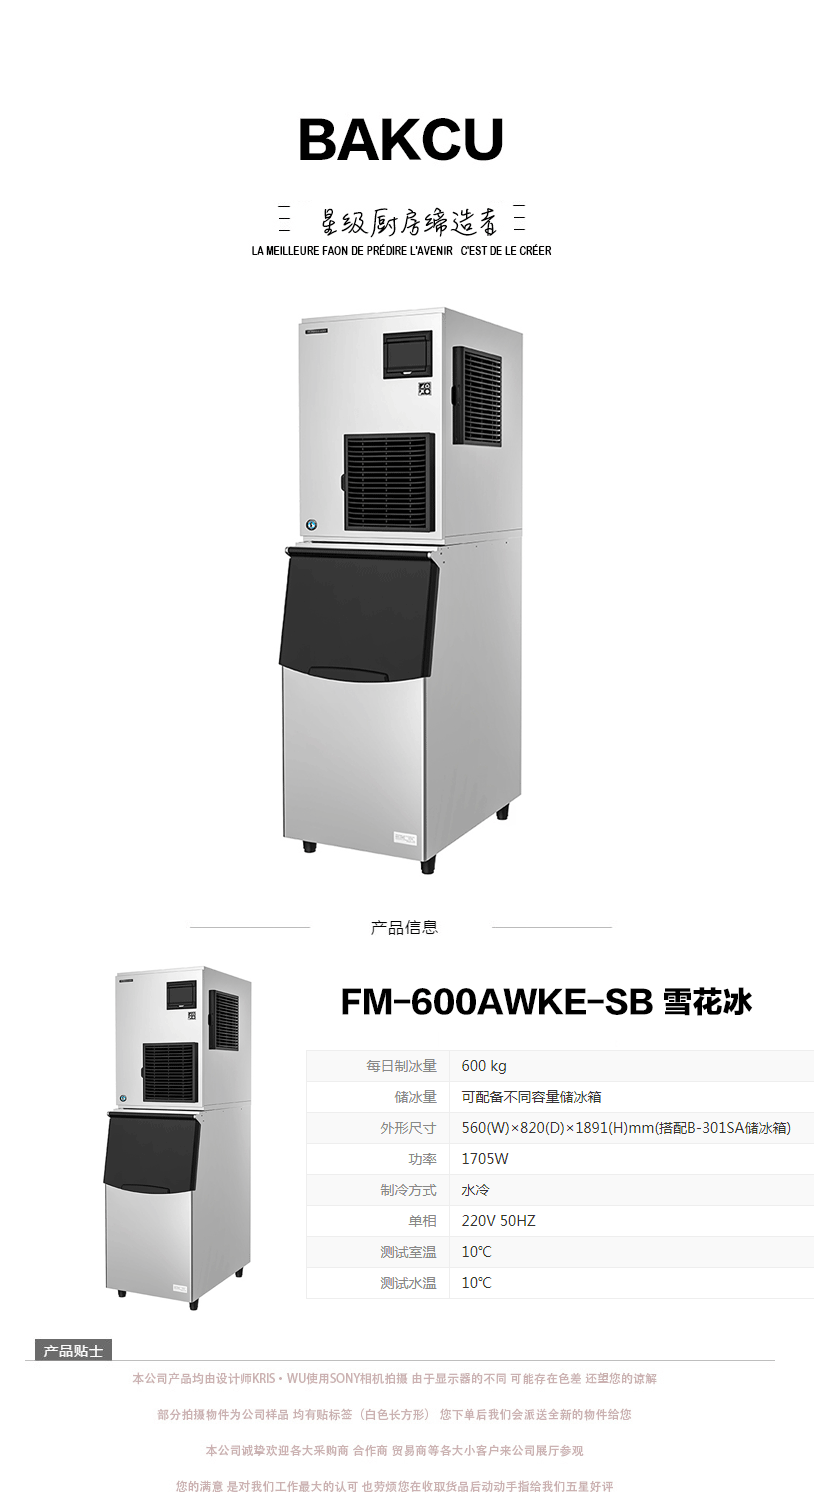 日本HOSHIZAKI星崎不锈钢原装进口FM-600AWKE-SB 雪花冰制冰机示例图1